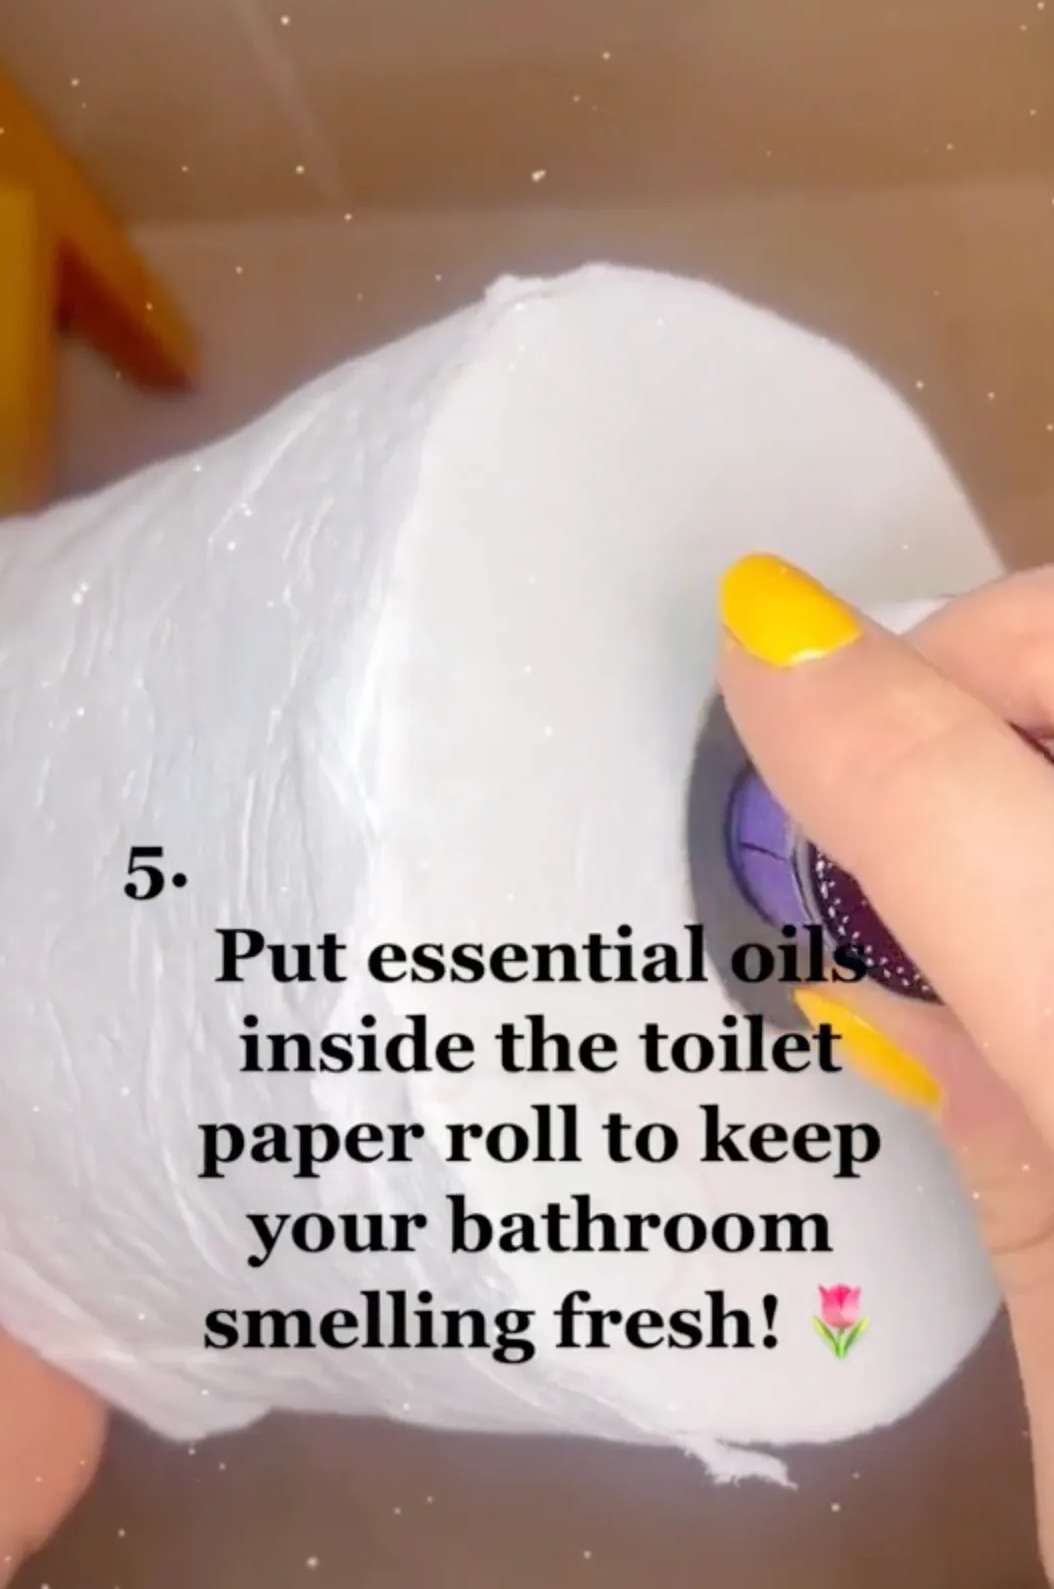 Ihre Toilettenpapiermethode sorgt dafür, dass Ihr Badezimmer frisch riecht